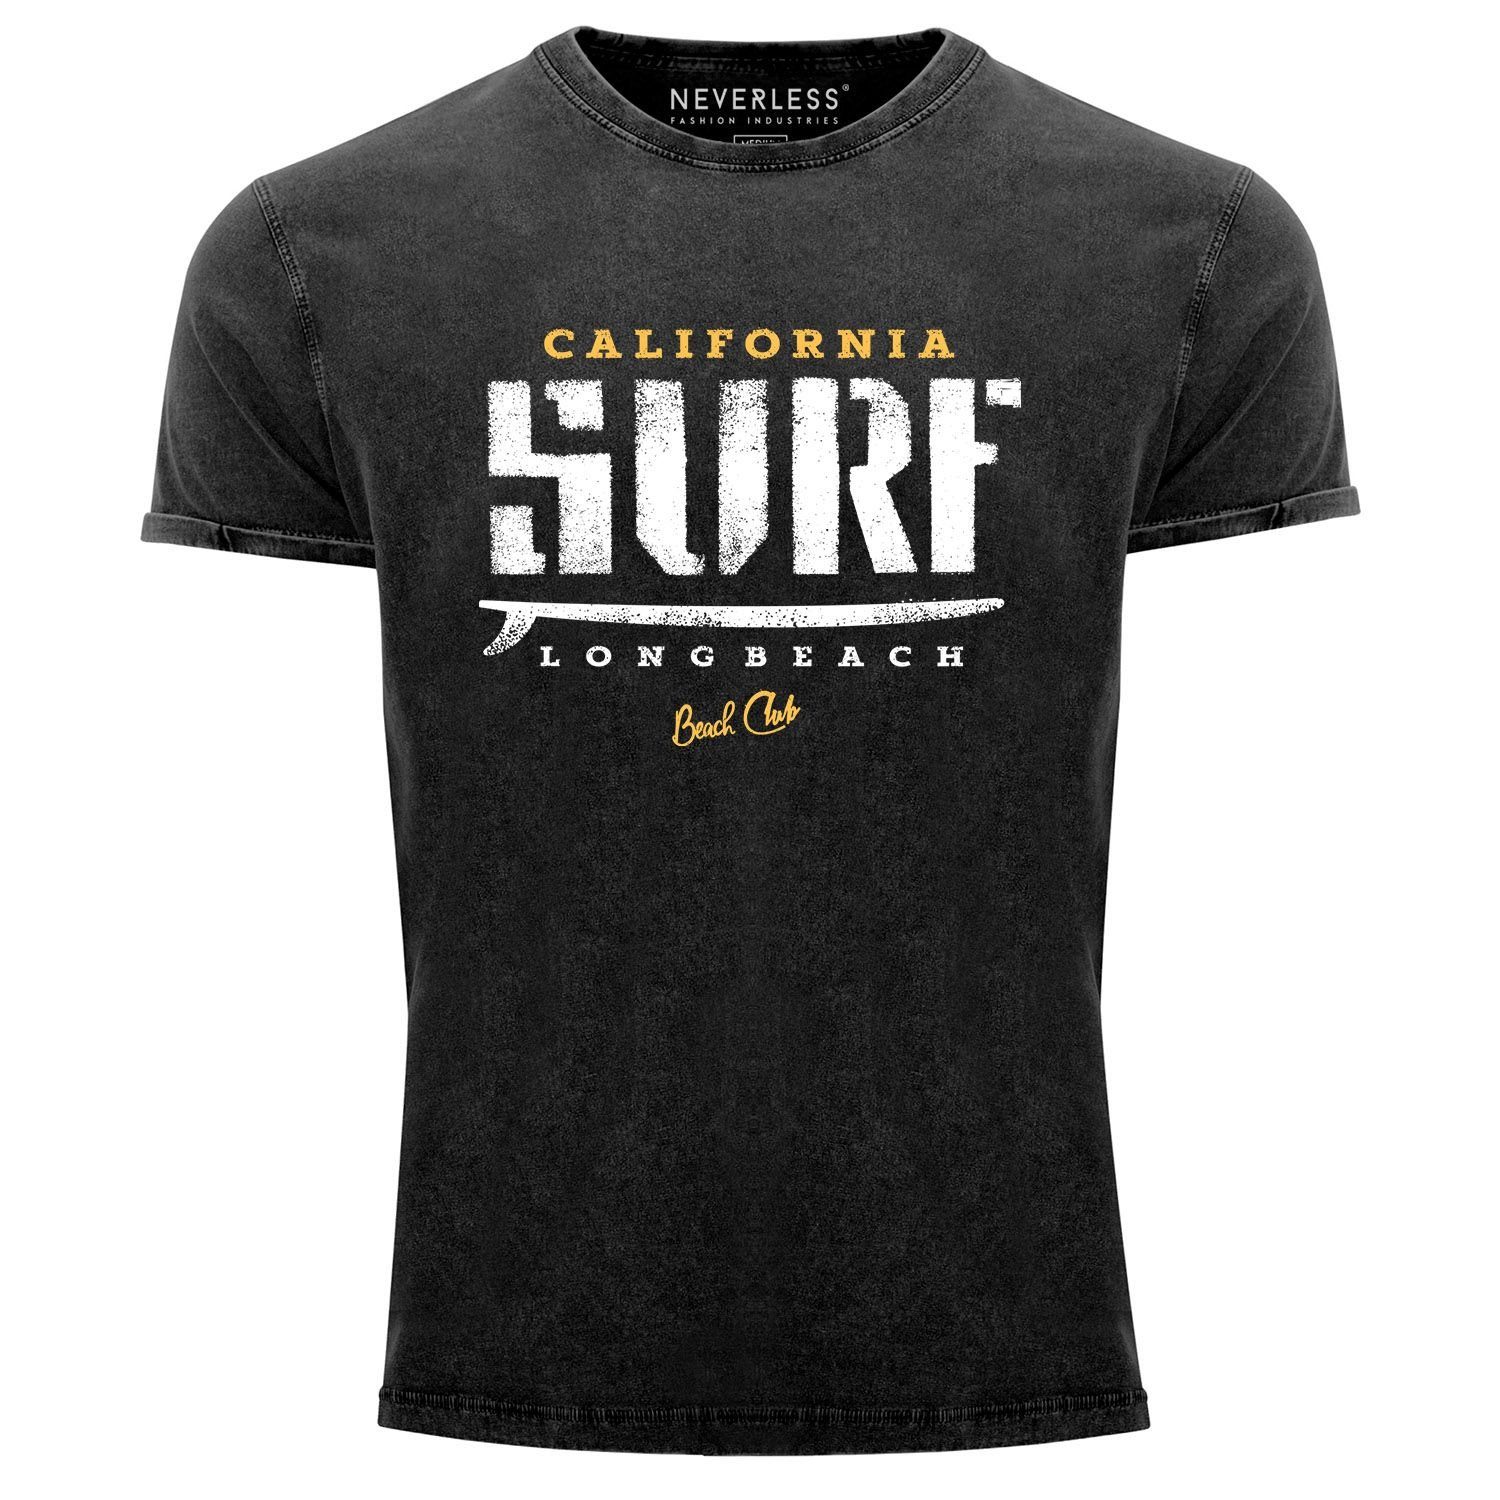 mit Cooles T-Shirt Look schwarz Slim Neverless Aufdruck Herren Fit Print Used Angesagtes California Vintage Shirt Neverless® Print-Shirt Surf